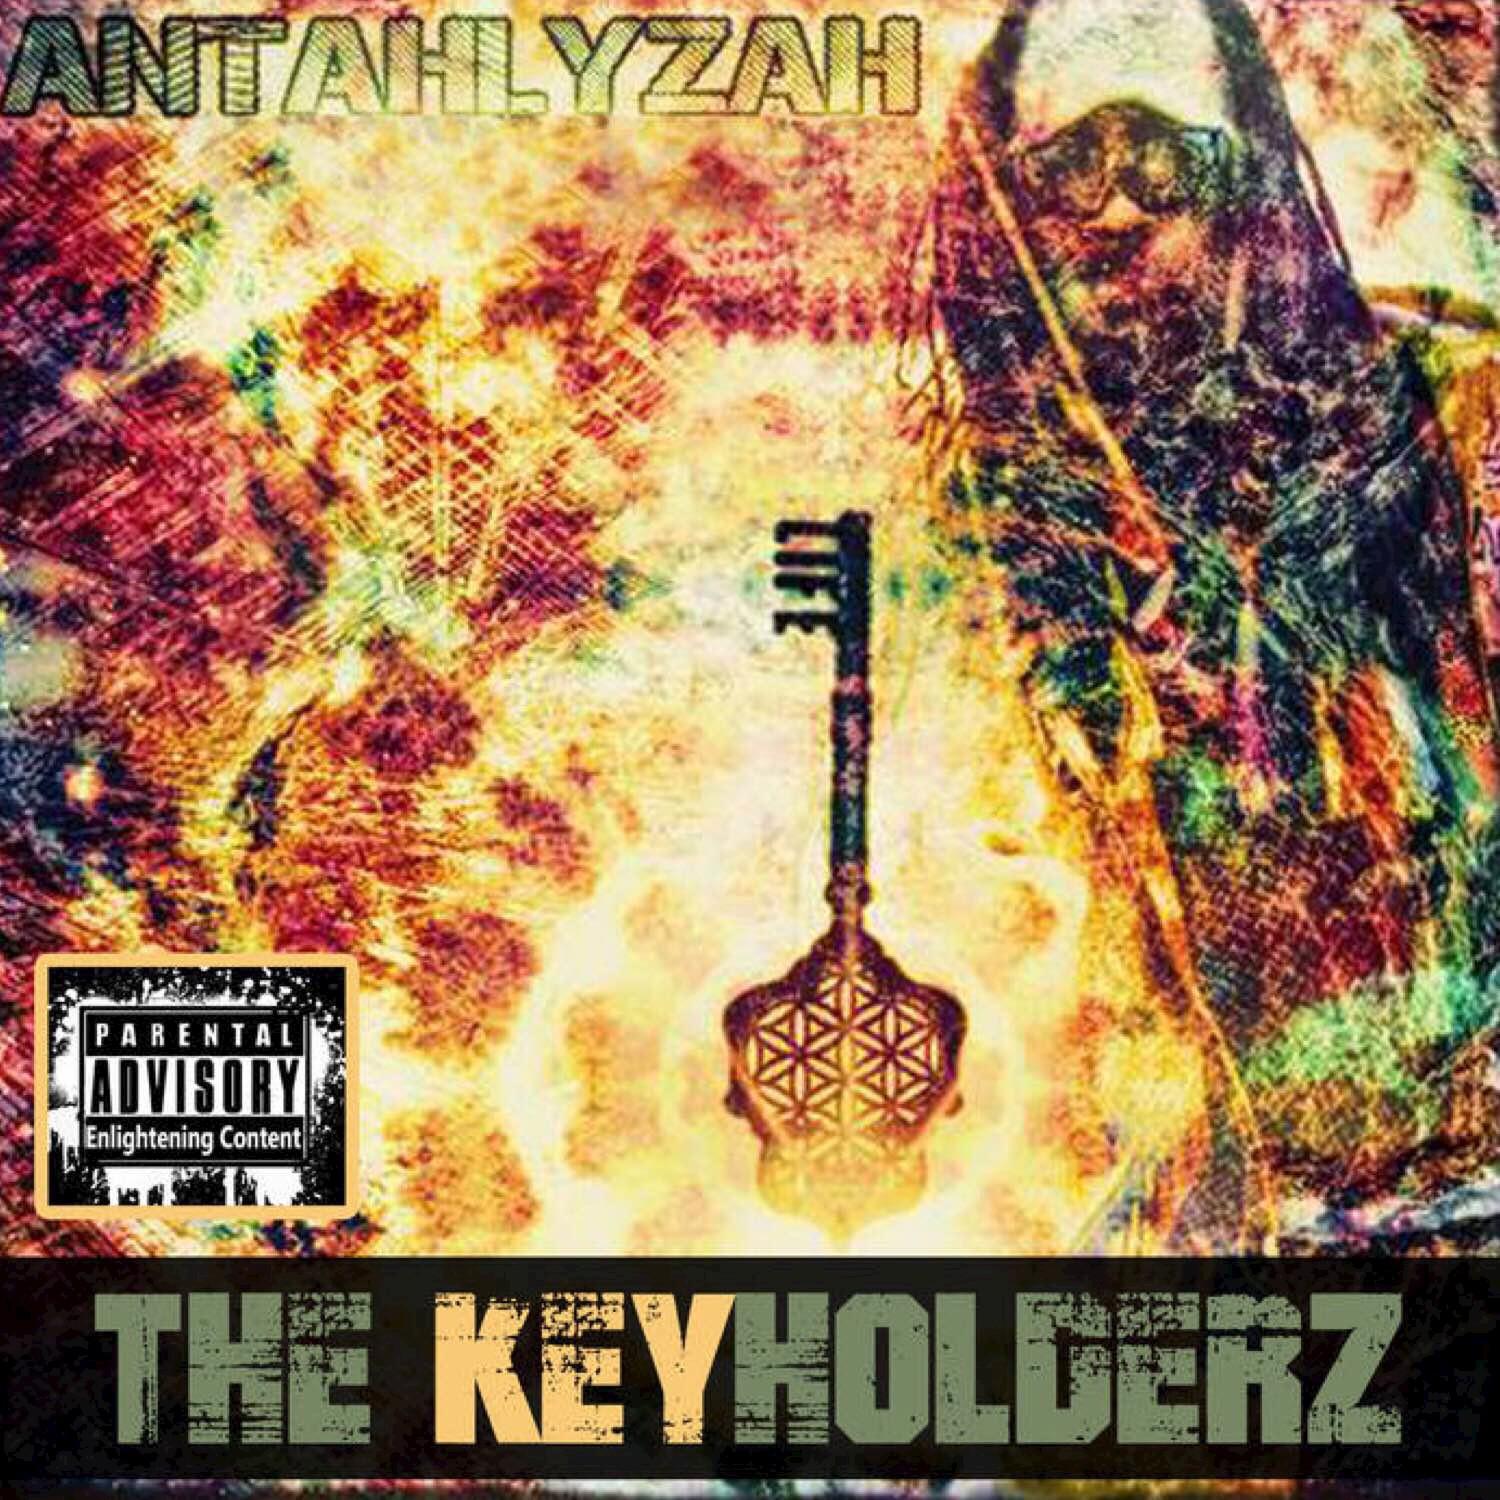 The Key Holderz